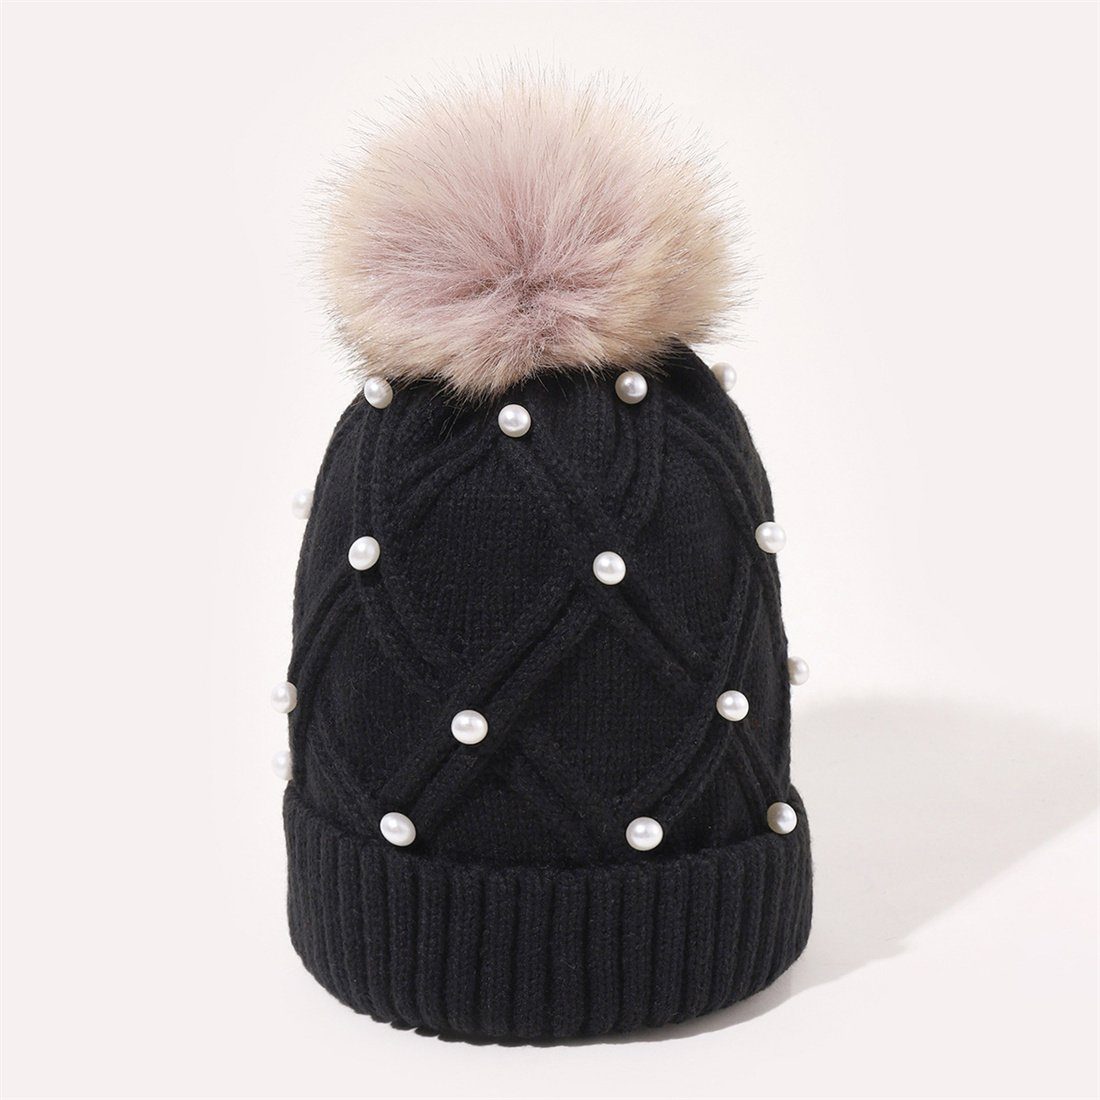 Hairball DÖRÖY Thickened Winter Cap, Knitted Cap Women's Strickmütze Fashion Schwarz Warm Woolen